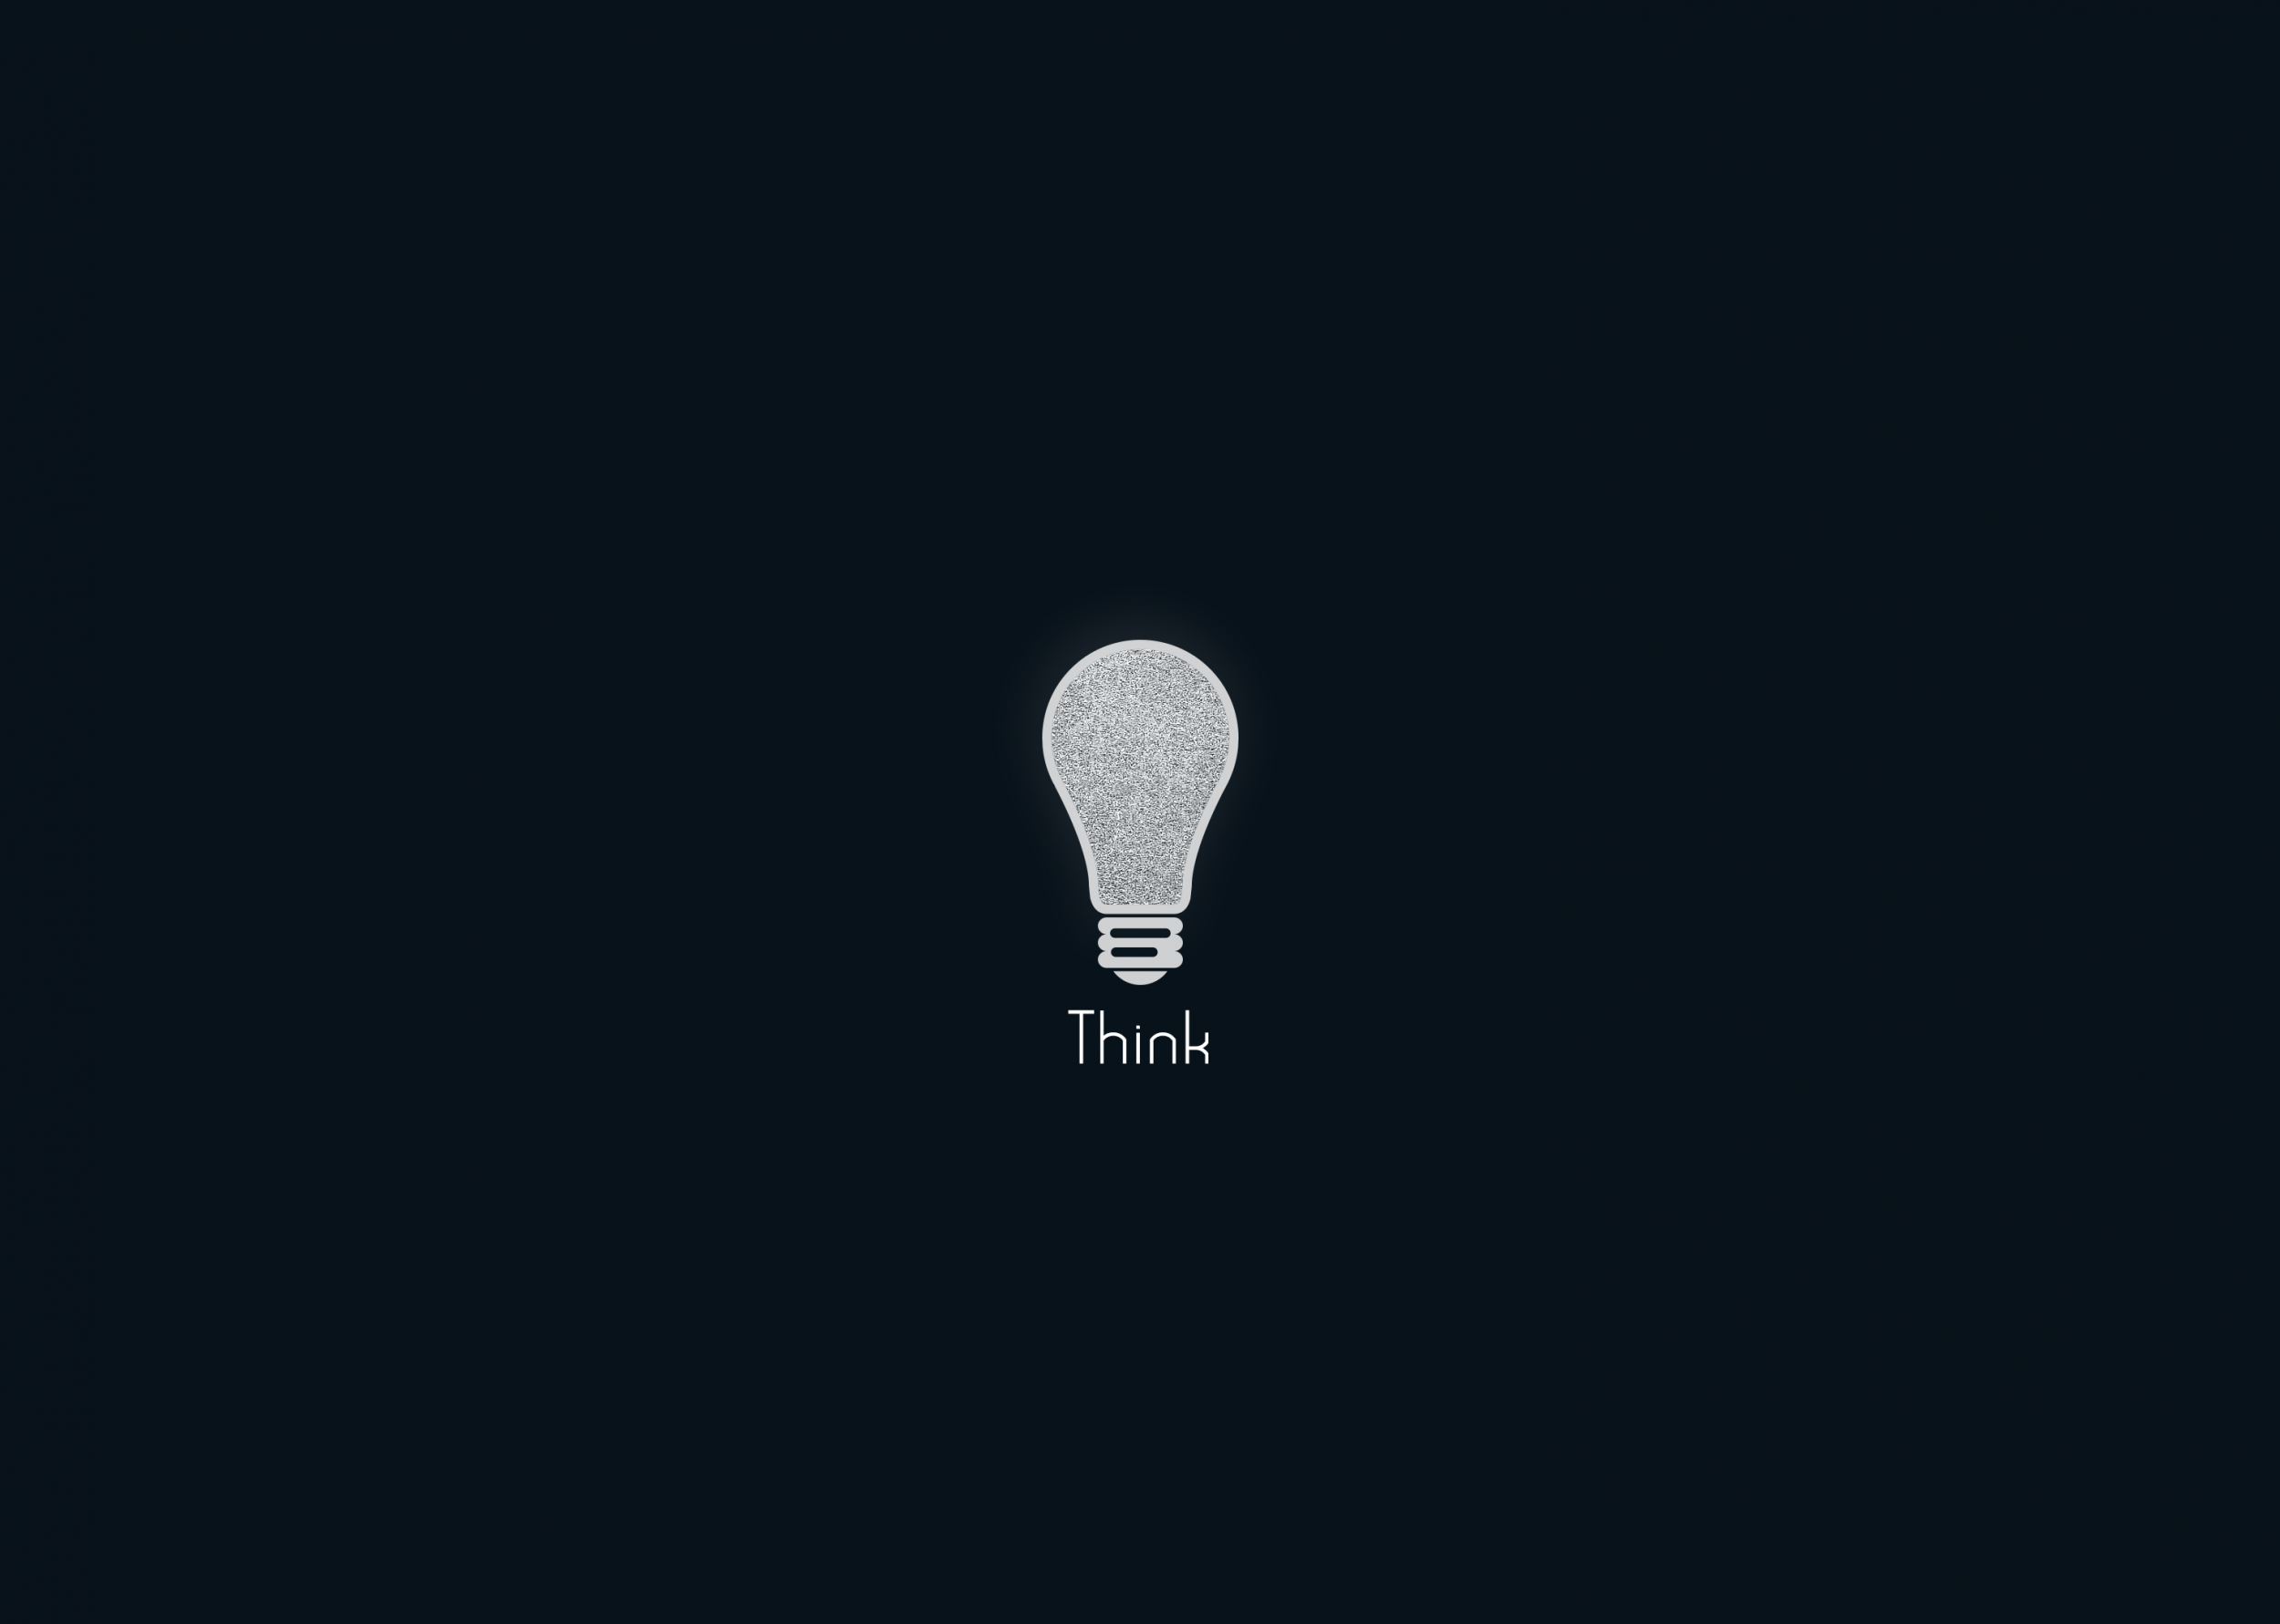 Download 2500x1781 Bulb, Think, Minimalistic Wallpaper